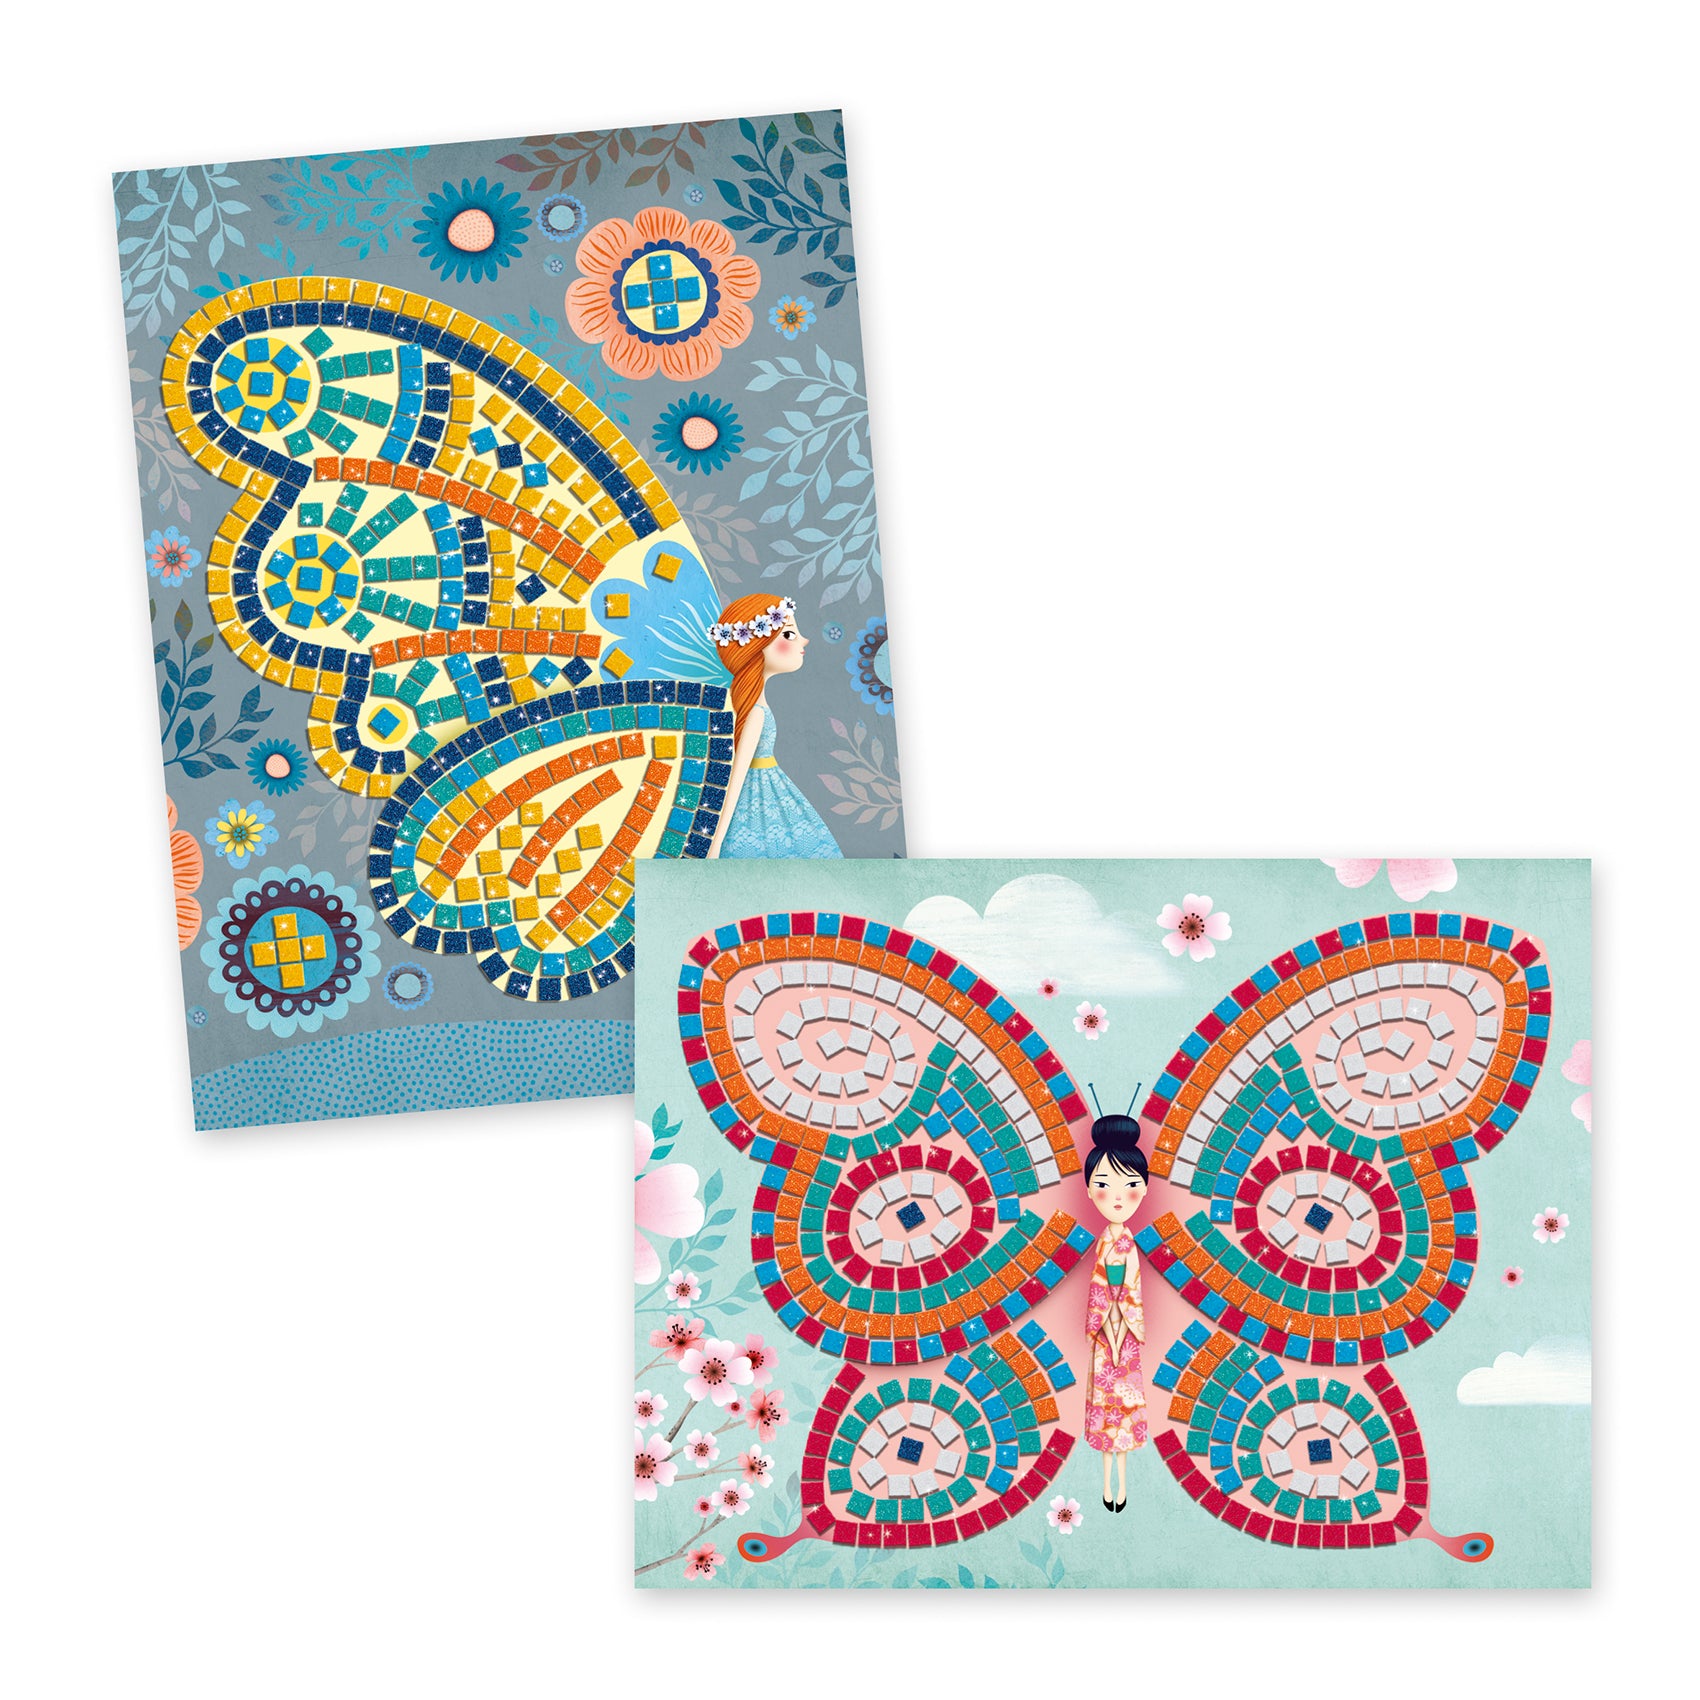 Djeco Soft Mosaics – Butterflies